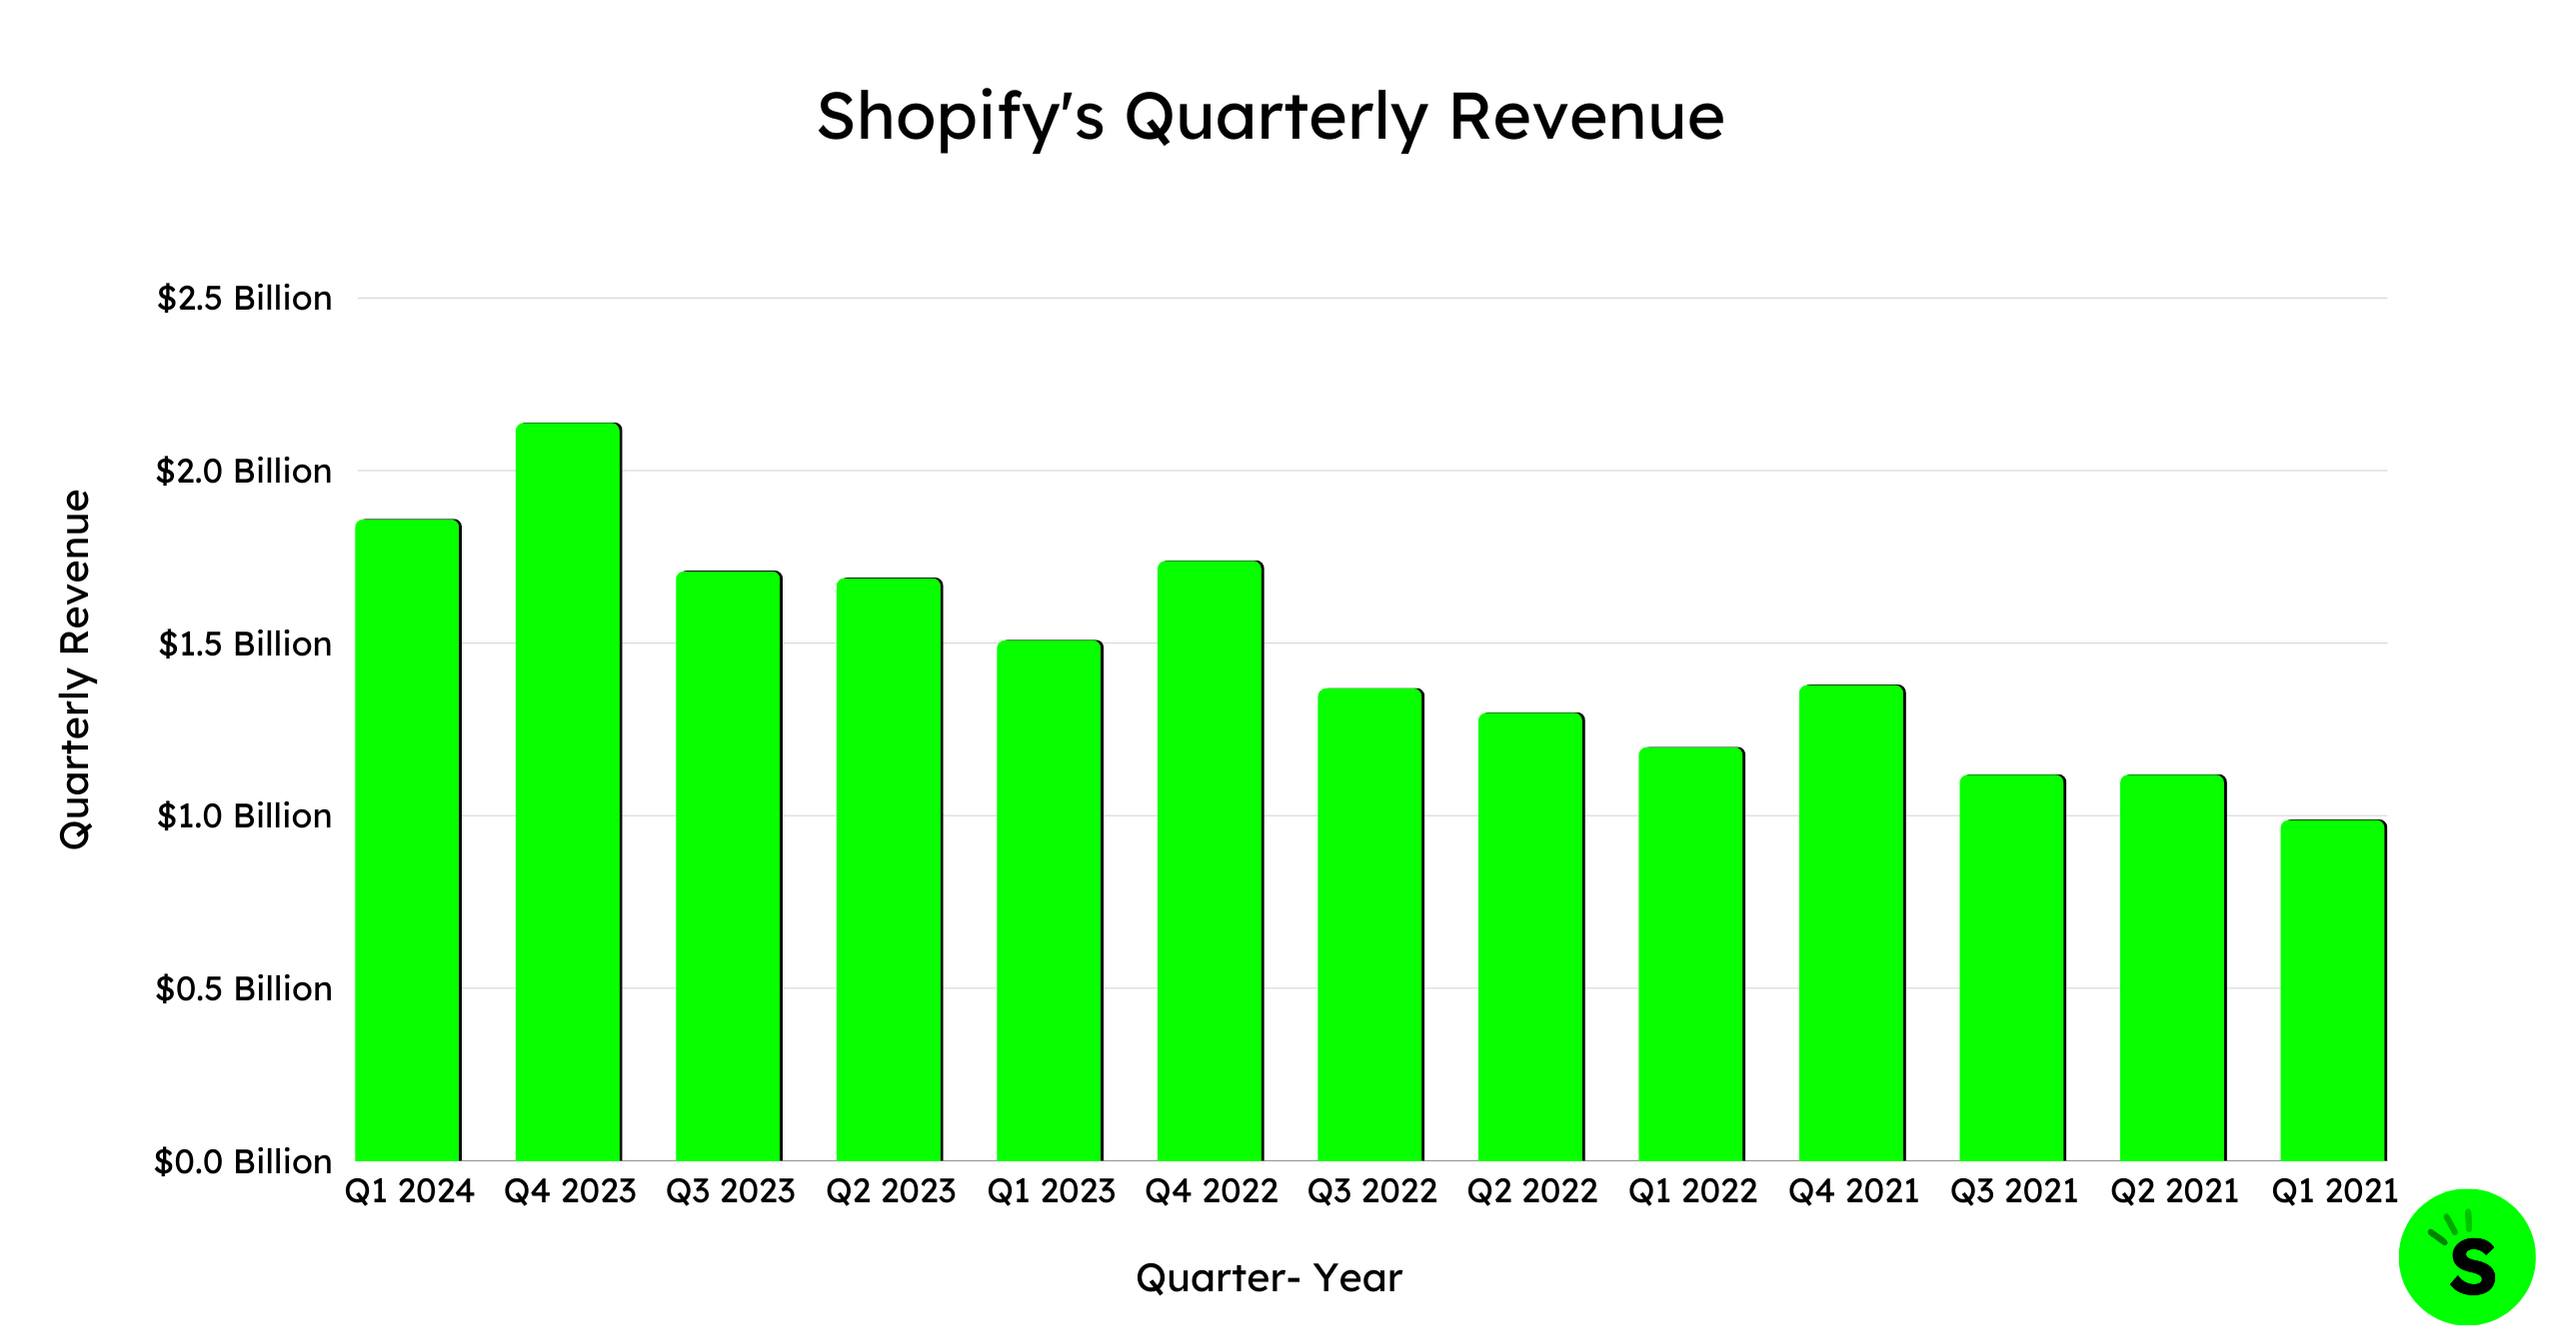 Shopify's Quarterly Revenue